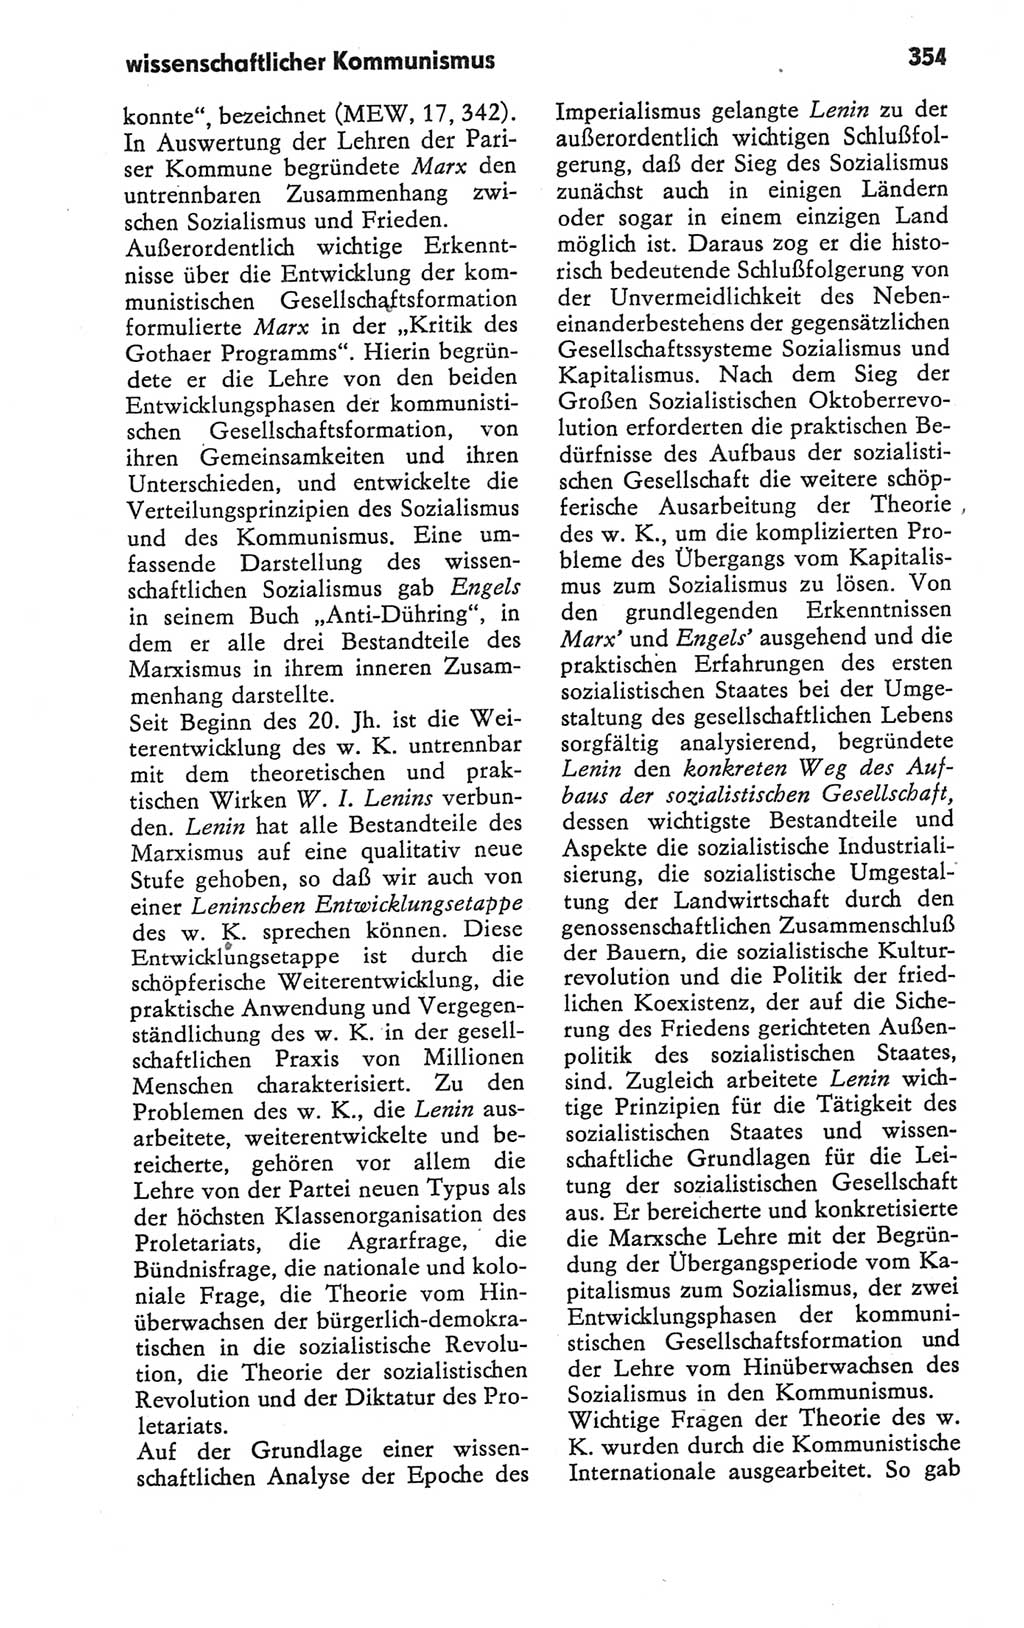 Kleines Wörterbuch der marxistisch-leninistischen Philosophie [Deutsche Demokratische Republik (DDR)] 1979, Seite 354 (Kl. Wb. ML Phil. DDR 1979, S. 354)